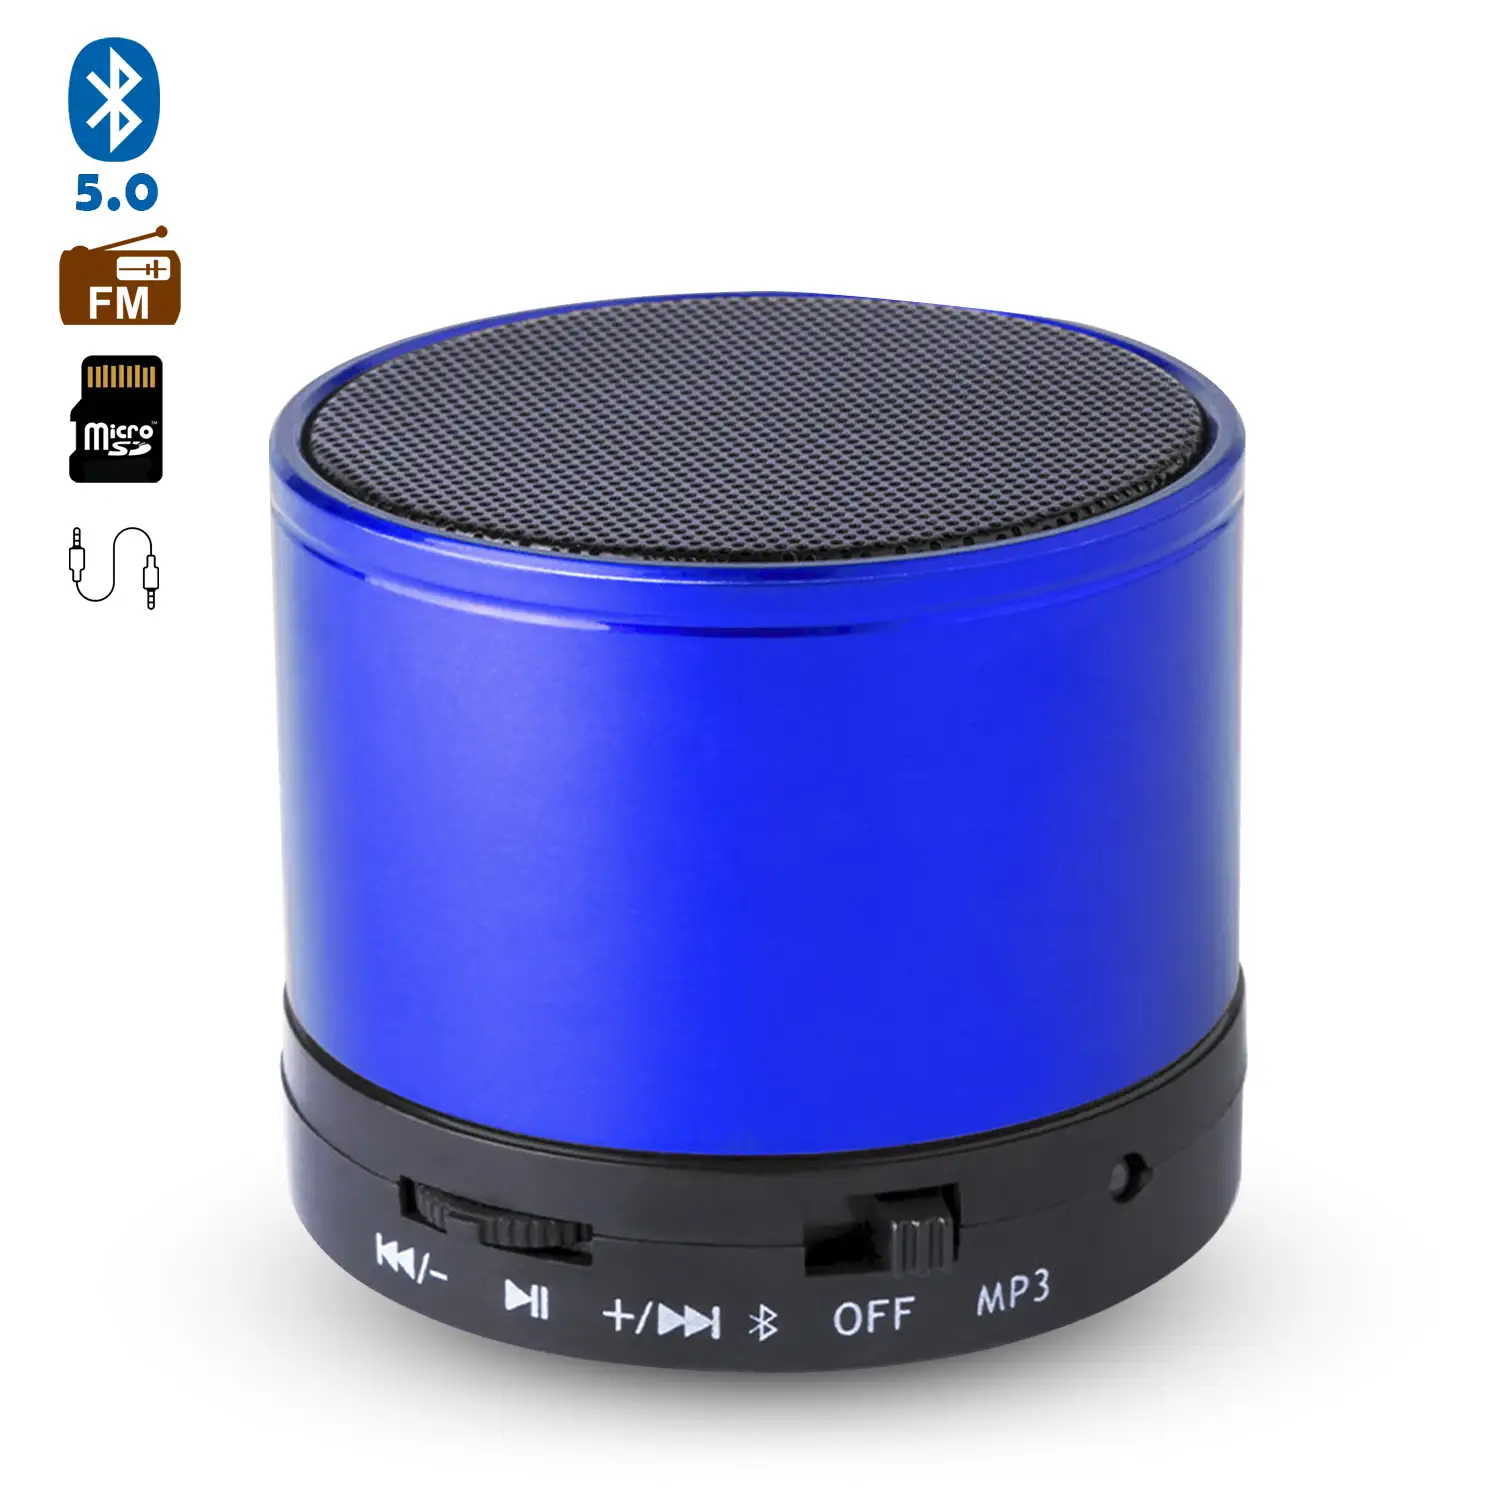 Altavoz compacto Martins Bluetooth 3.0 de 3W, con manos libres y radio FM.